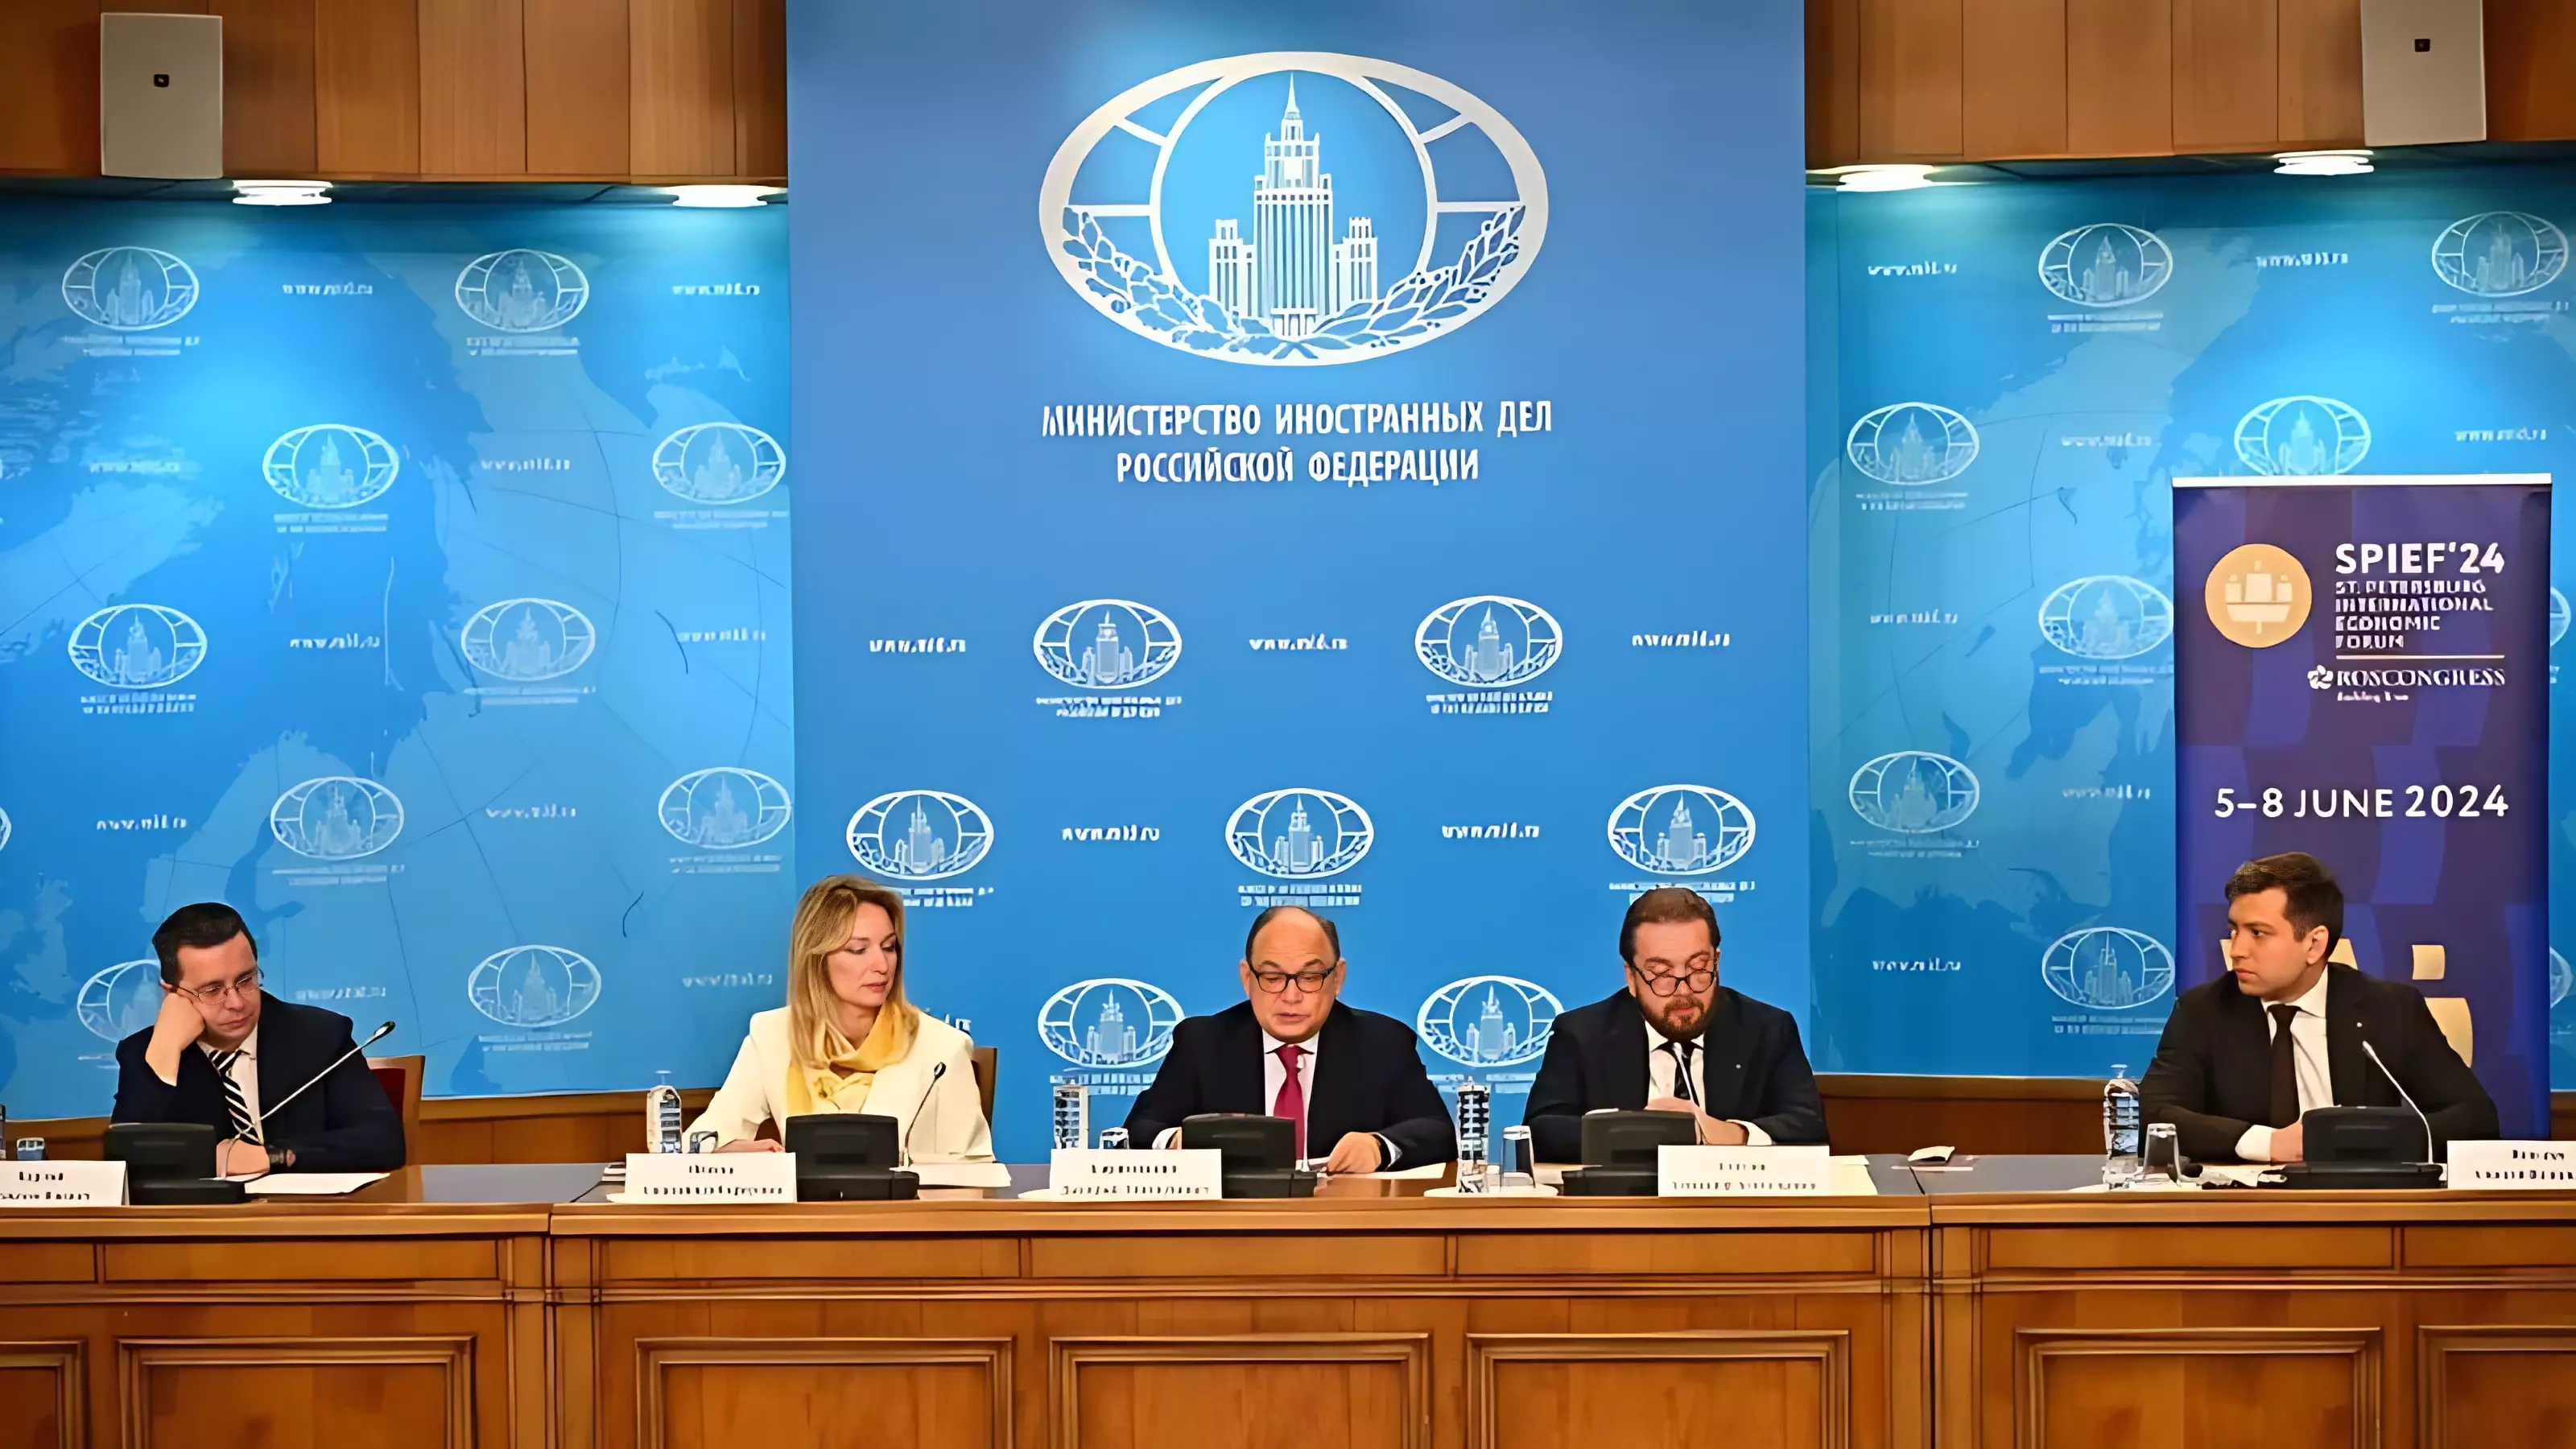 В МИД РФ организовали презентацию ПМЭФ-2024 для послов иностранных государств